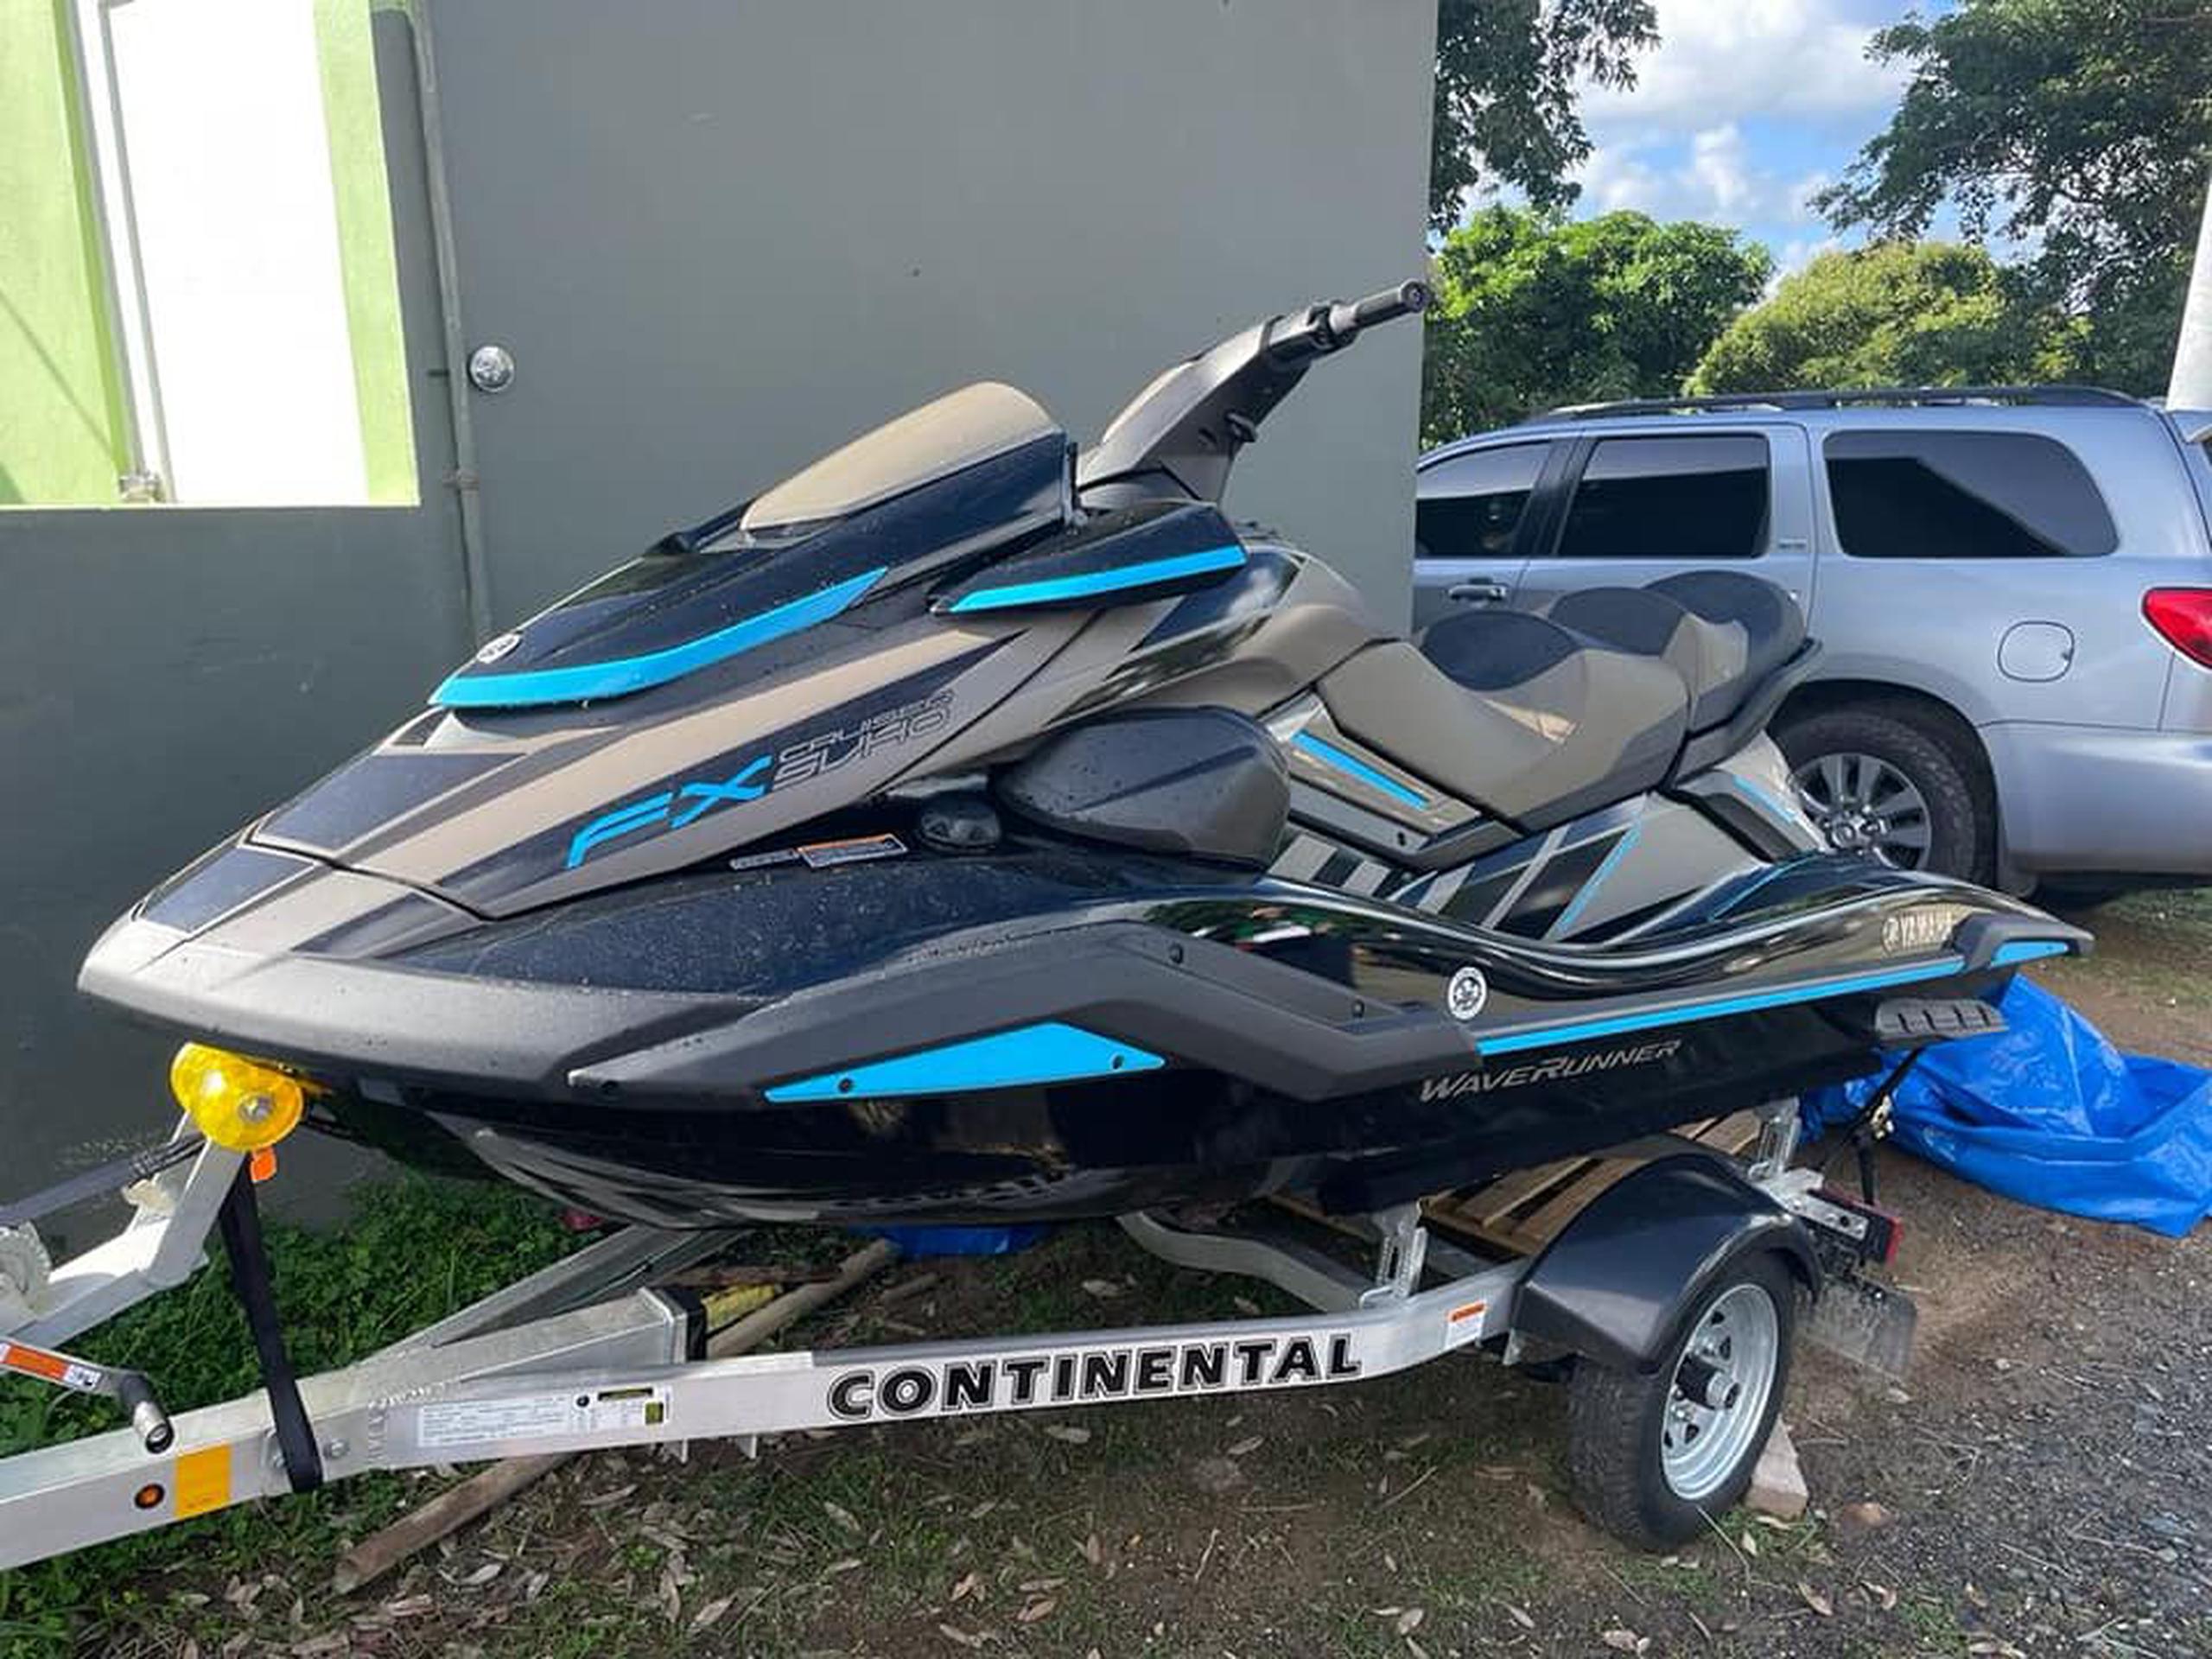 La nueva unidad de motora acuática se une a la flota de equipos de rescate adquiridos por la administración del alcalde de Vieques, José 'Junito' Corcino, con el fin de aumentar el apoyo en rescates y emergencias.